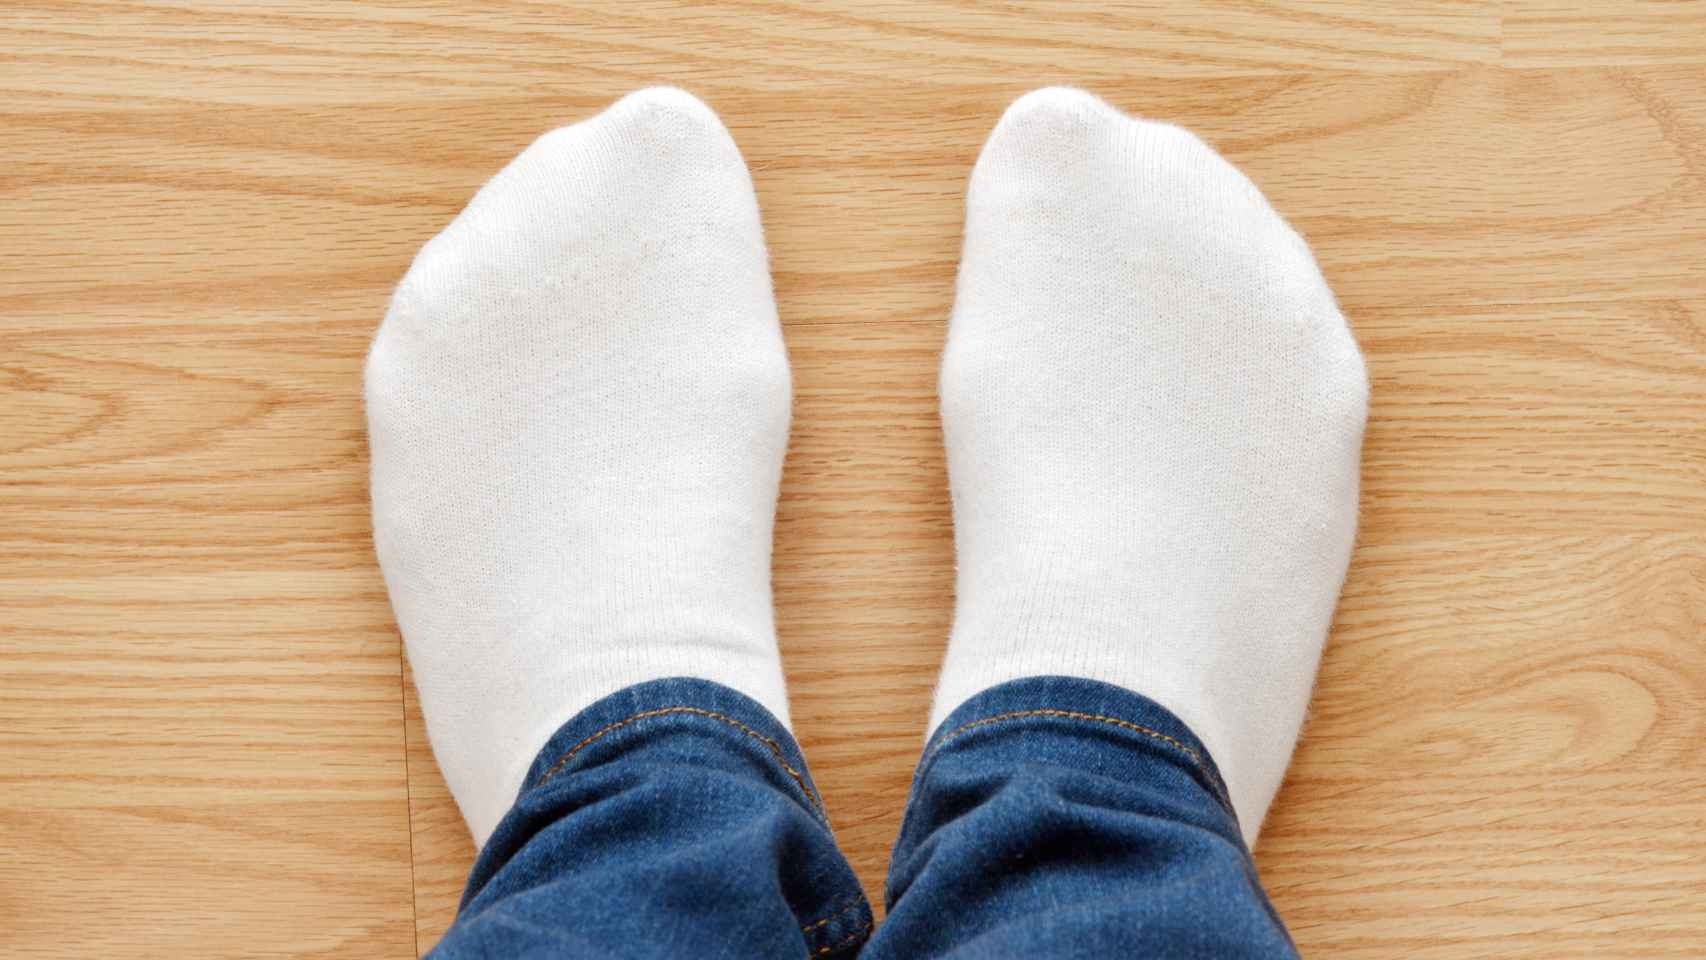 adiós a los calcetines sucios: el sencillo truco que los deja blancos en segundos sin usar lavadora